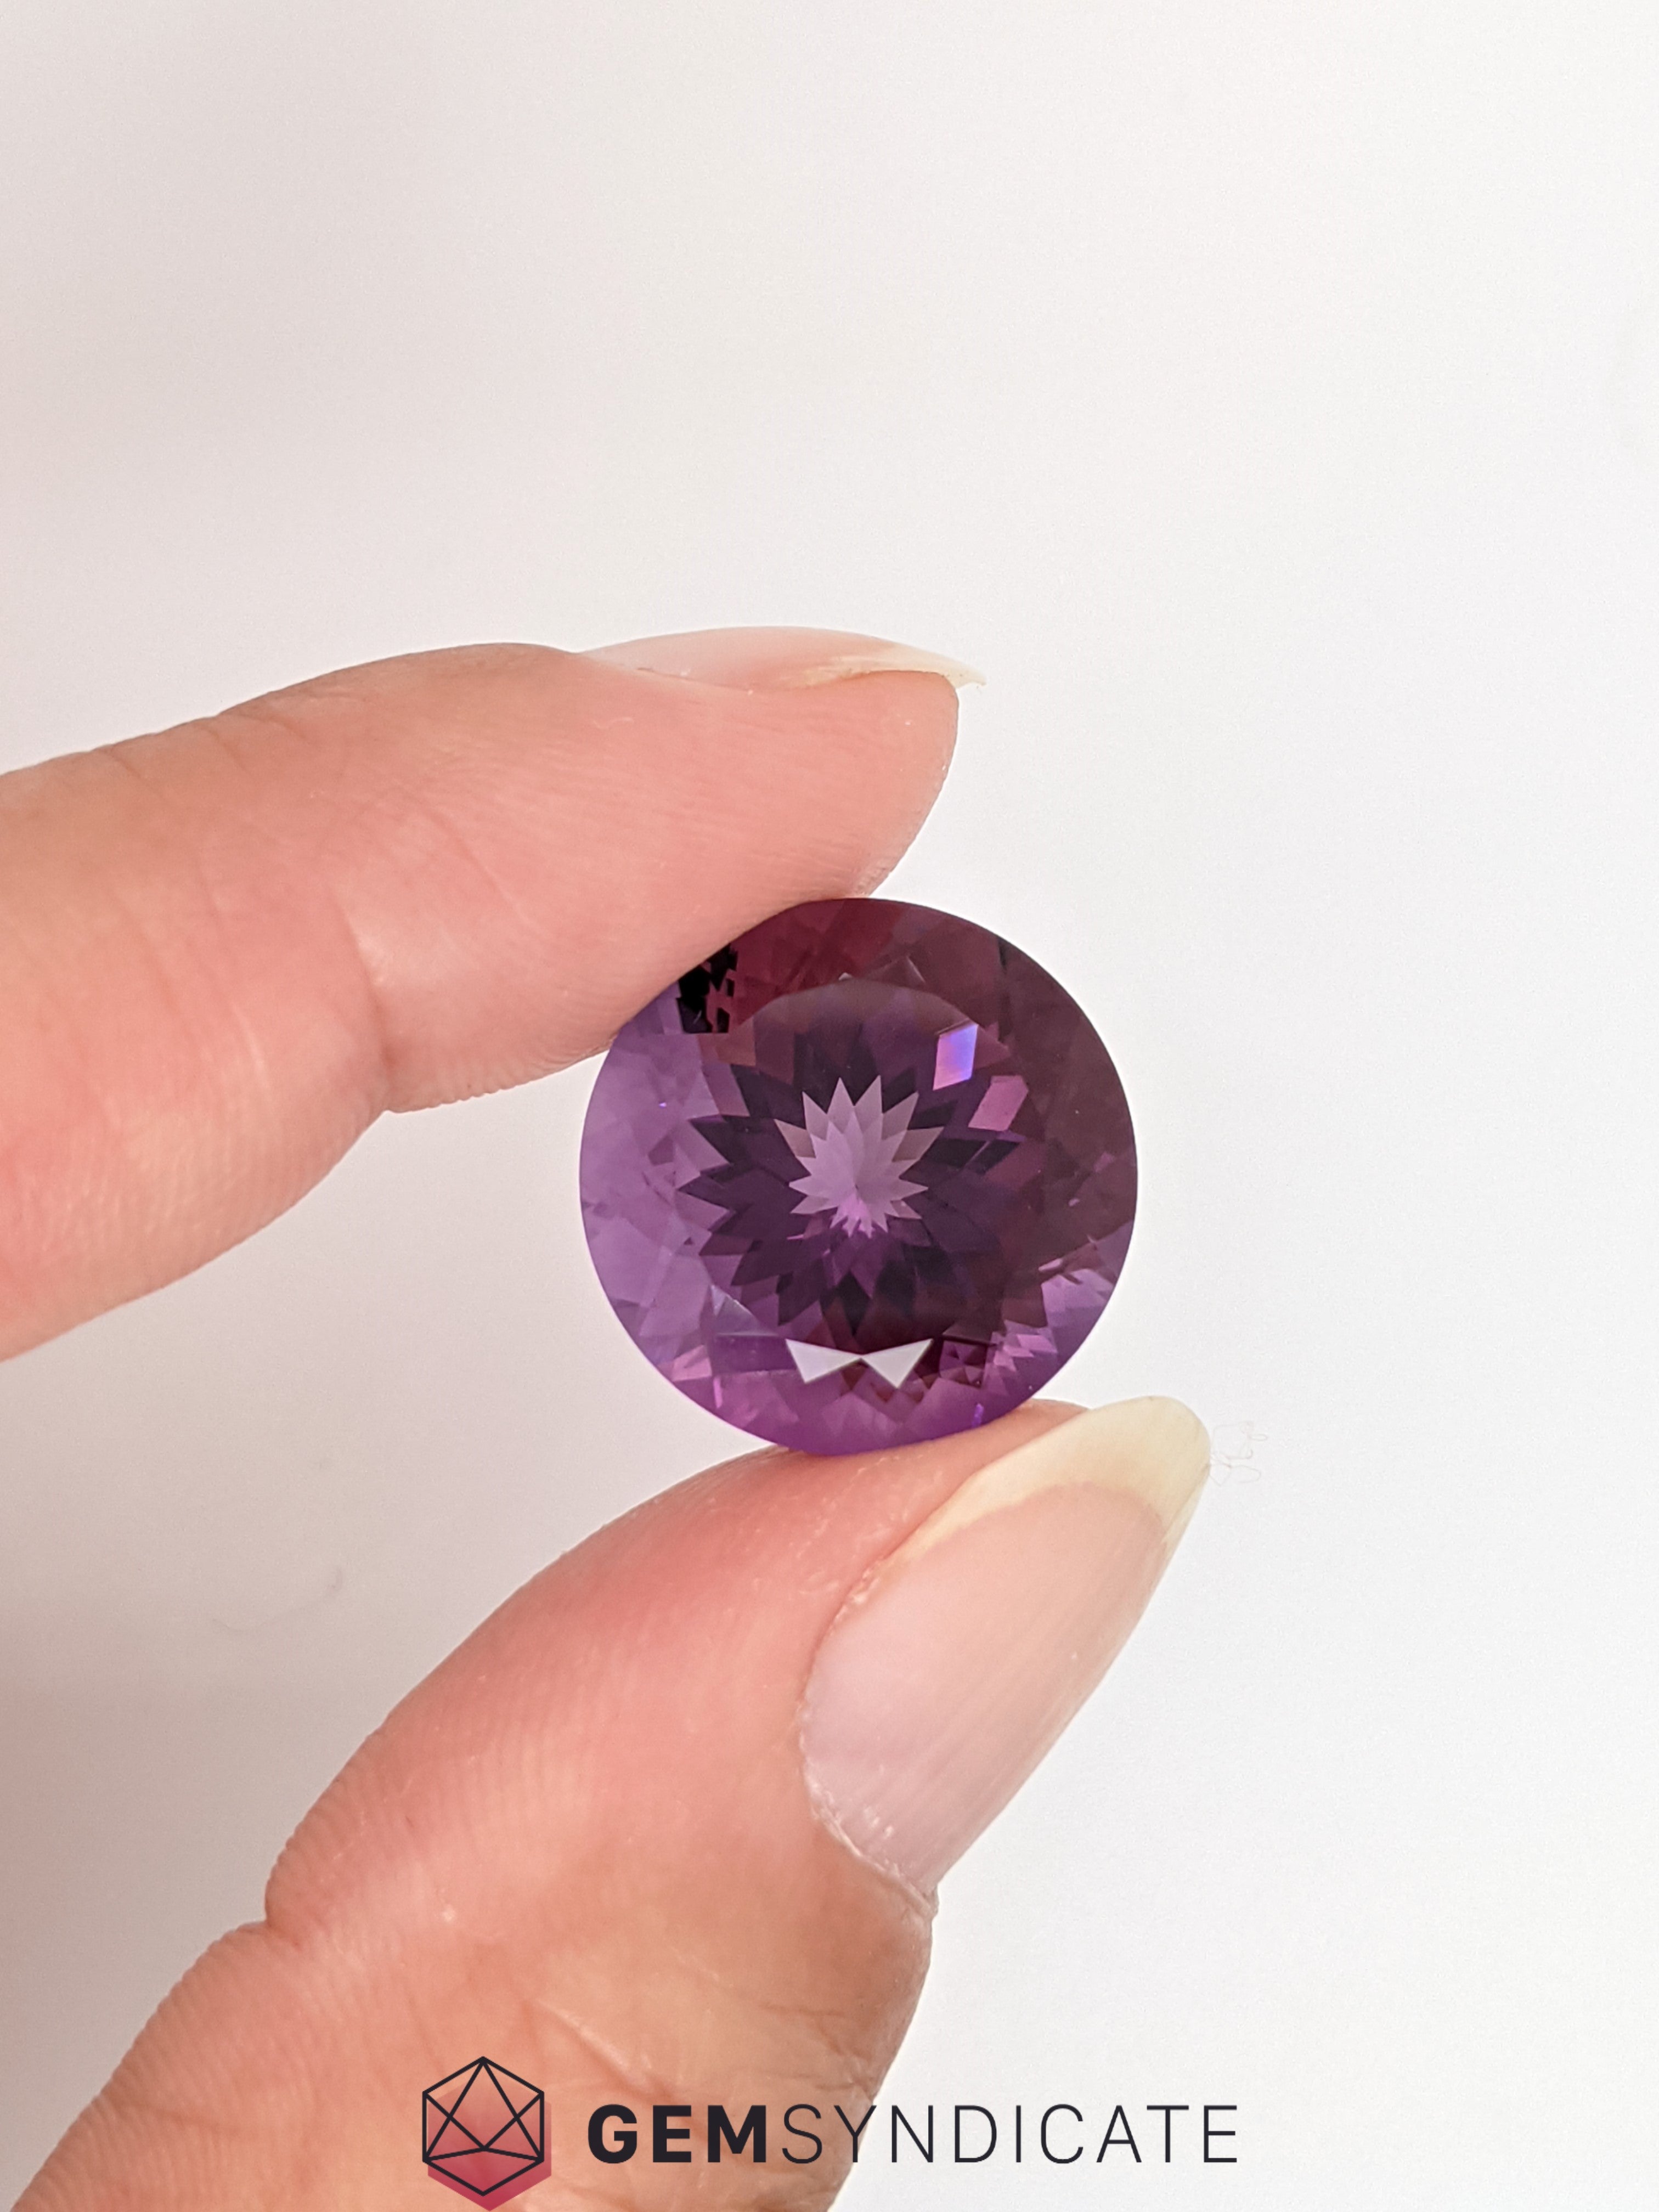 Magnificent Round Purple Amethyst 18.02ct